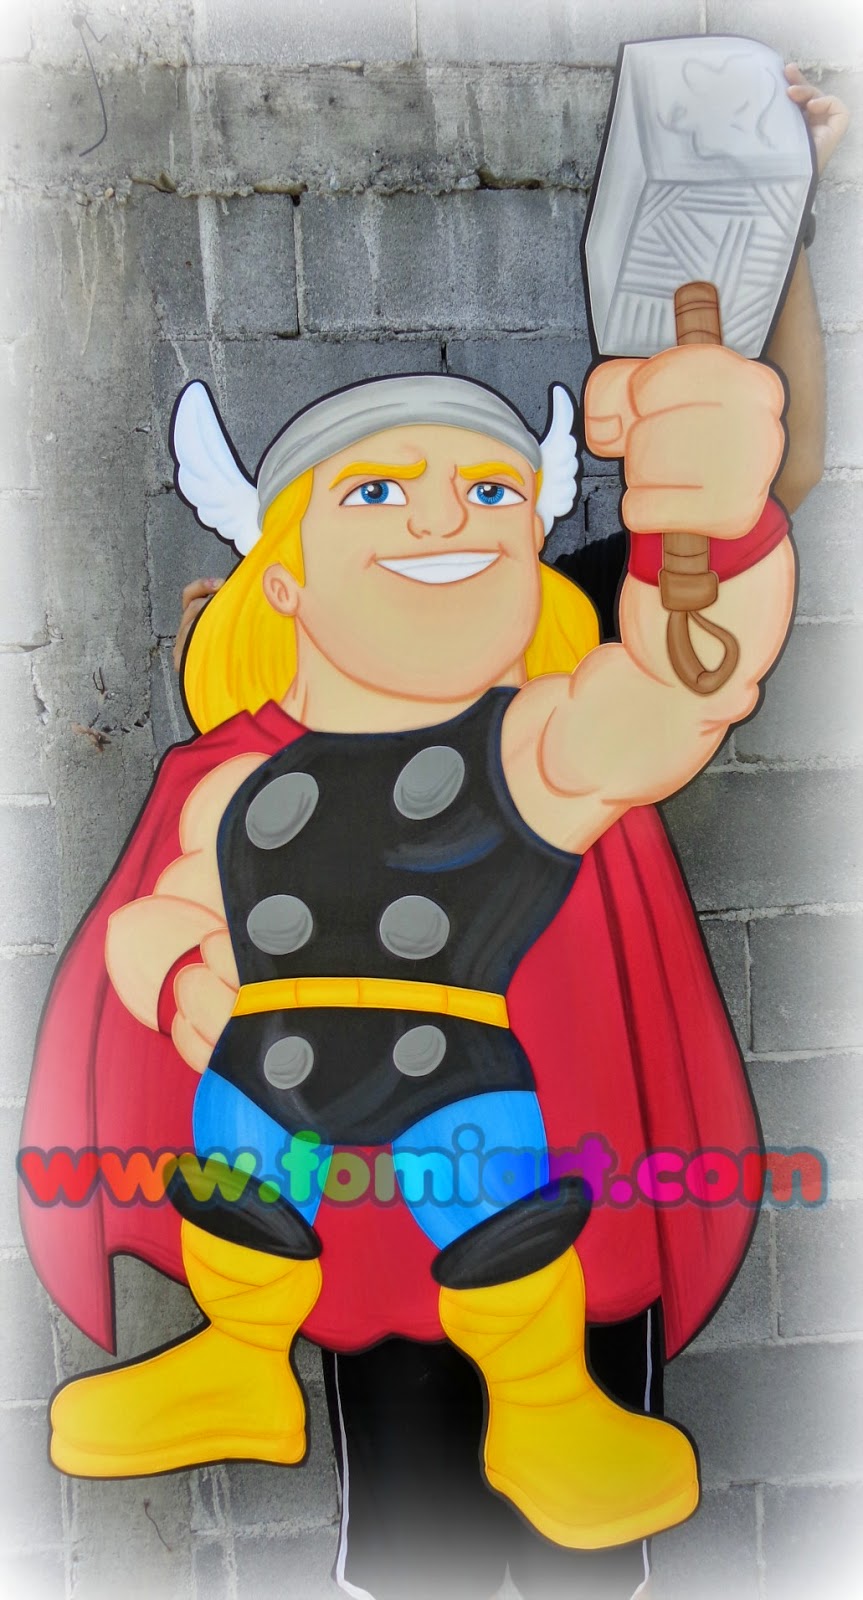 Thor decorado con foamy